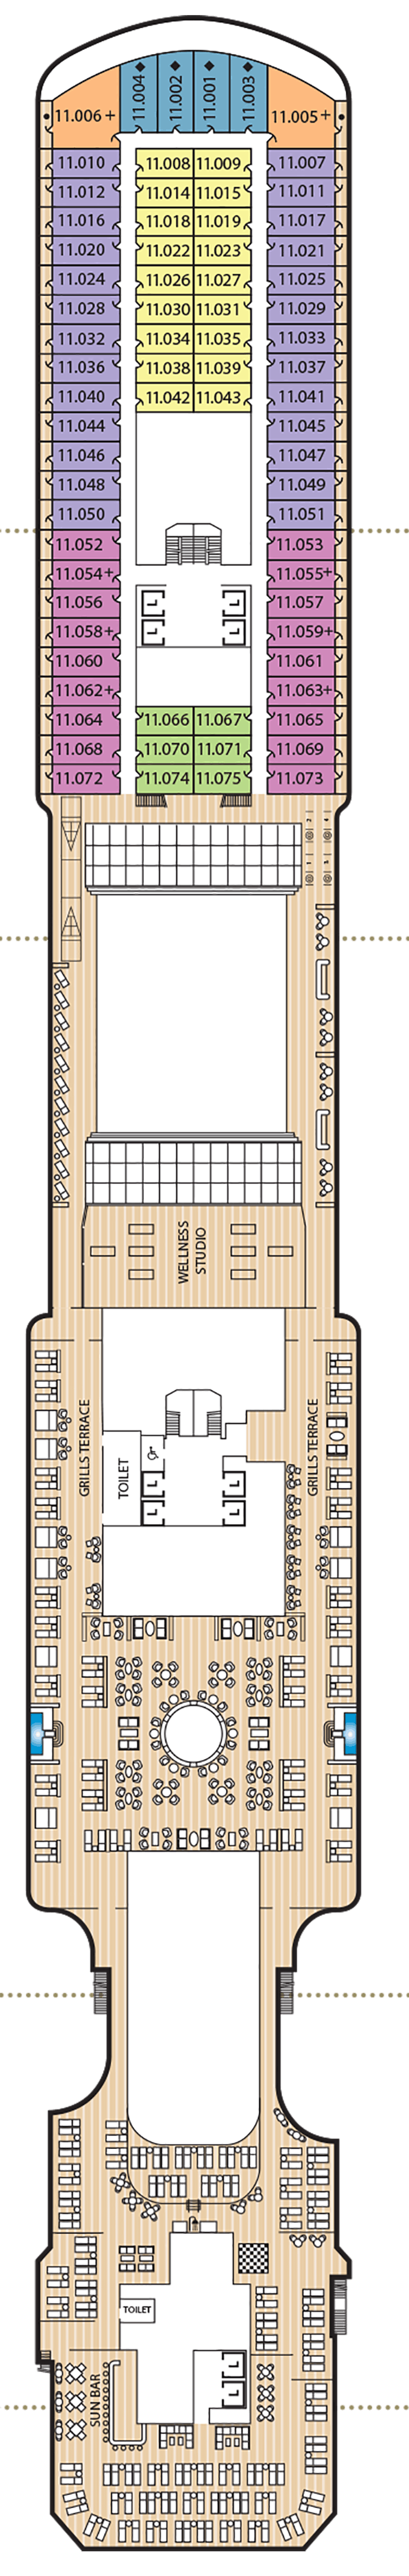 Queen Anne - Cunard Line - Deck 11 (Deck 11)